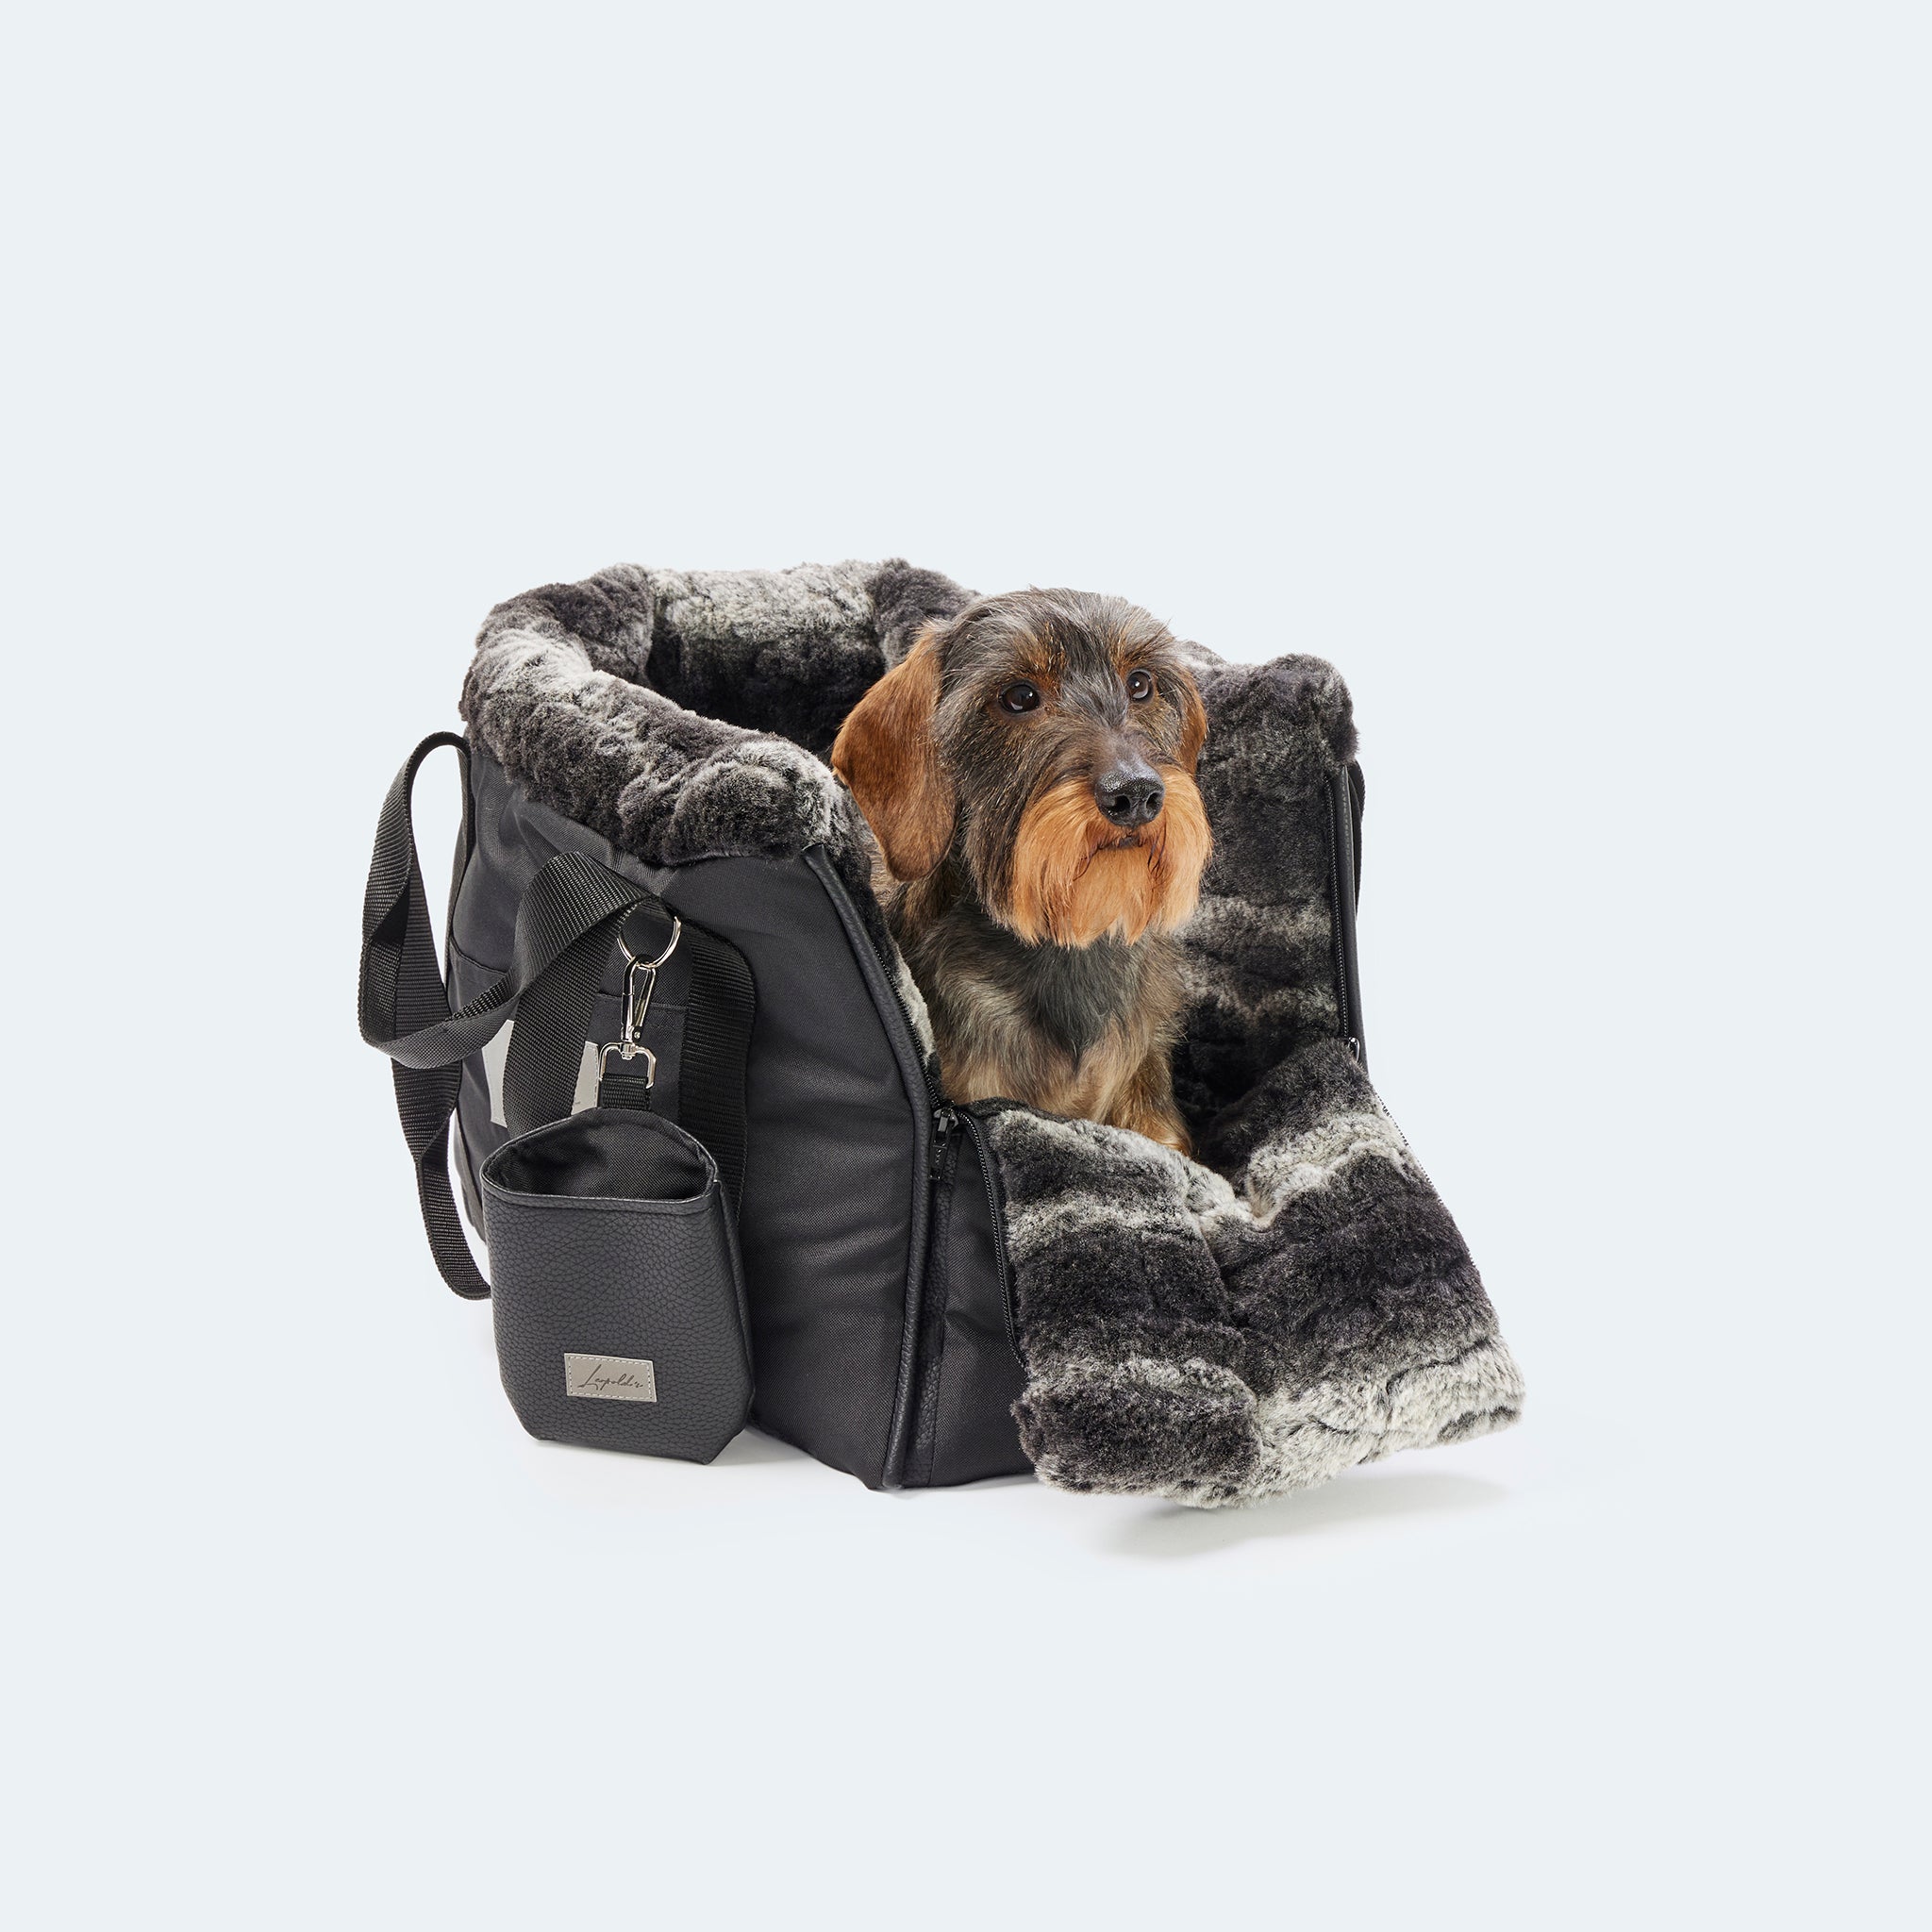 Hundetasche CosyBag Davos Limited Edition     - von Leopold's kaufen bei leopolds-finest